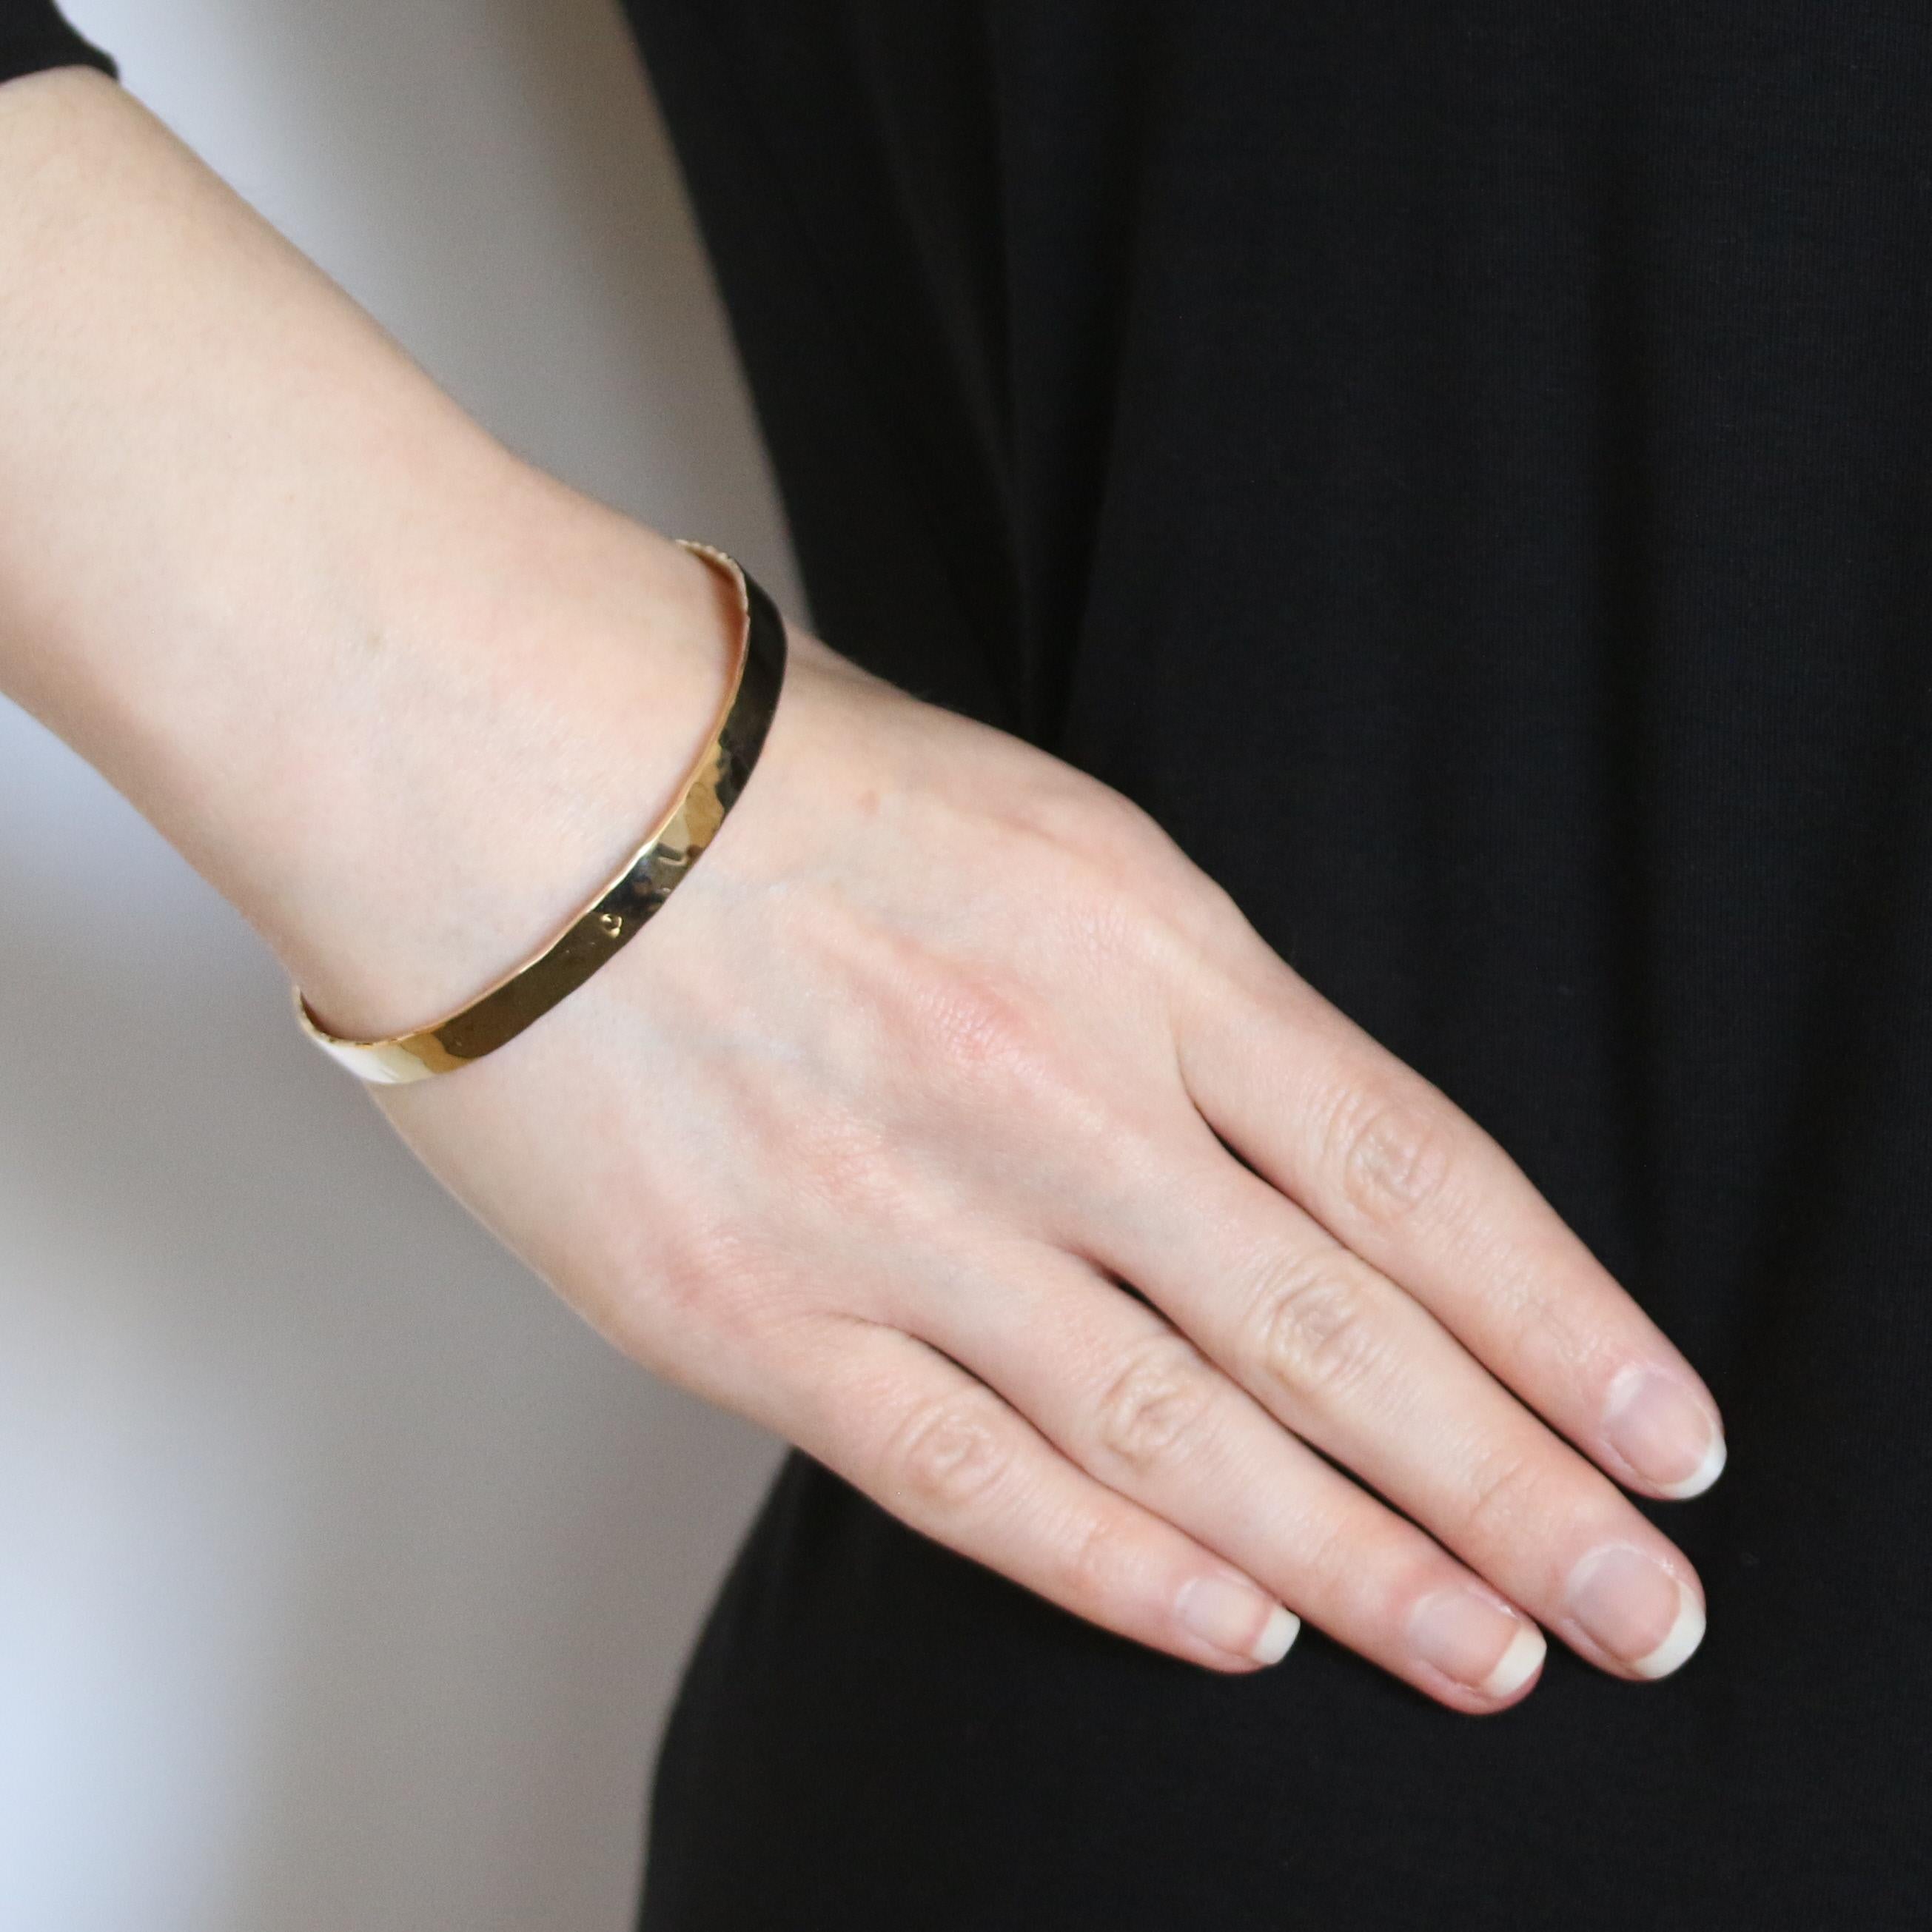 Contenu du métal : Or jaune 14k 

Style de bracelet : Manchette ovale 
Type de fermeture : N/A (glisse sur le poignet)
Caractéristiques : Finition martelée 

Mesures : 
Circonférence intérieure : 7